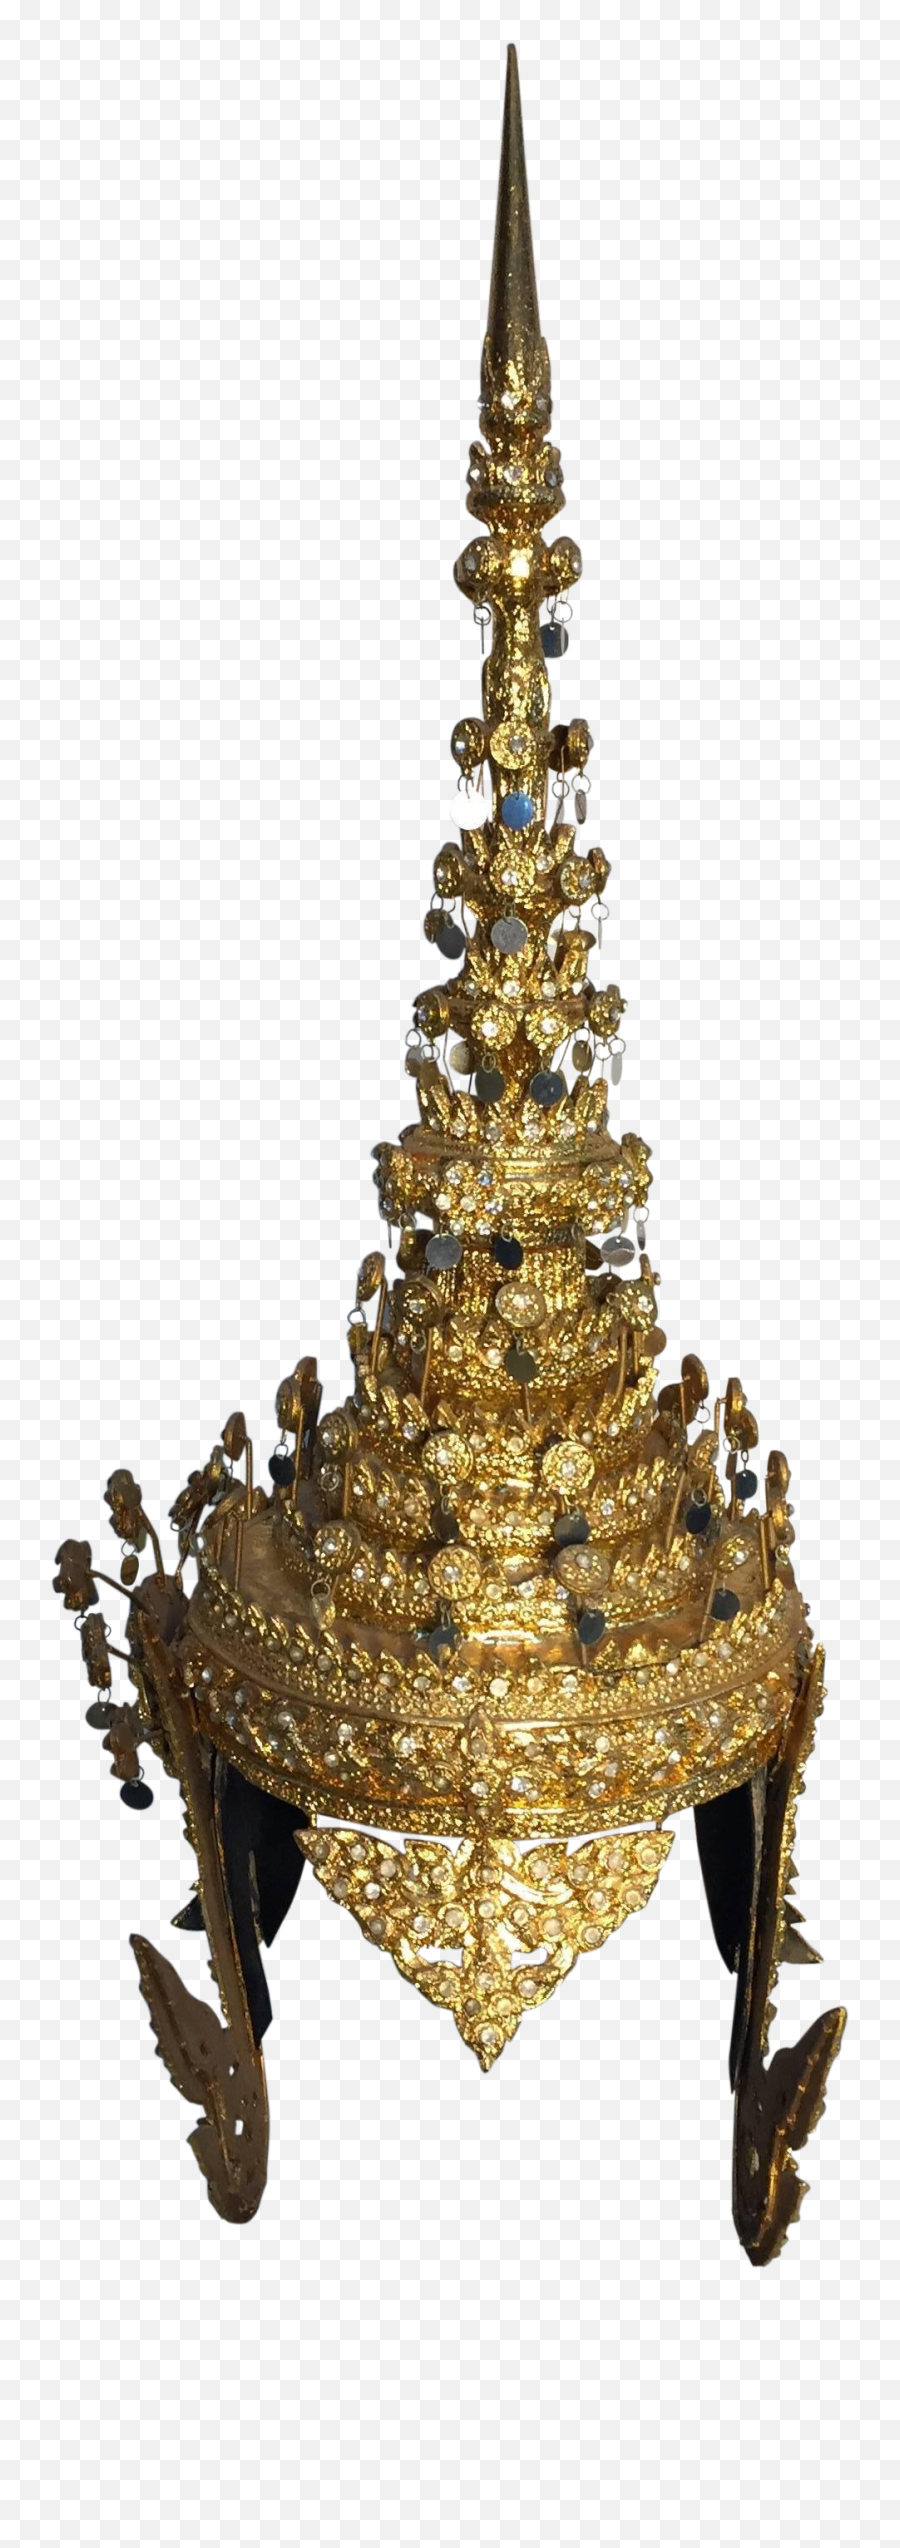 Thai Gilt Ceremonial Headdress - Thai Headdress Png,Headdress Png